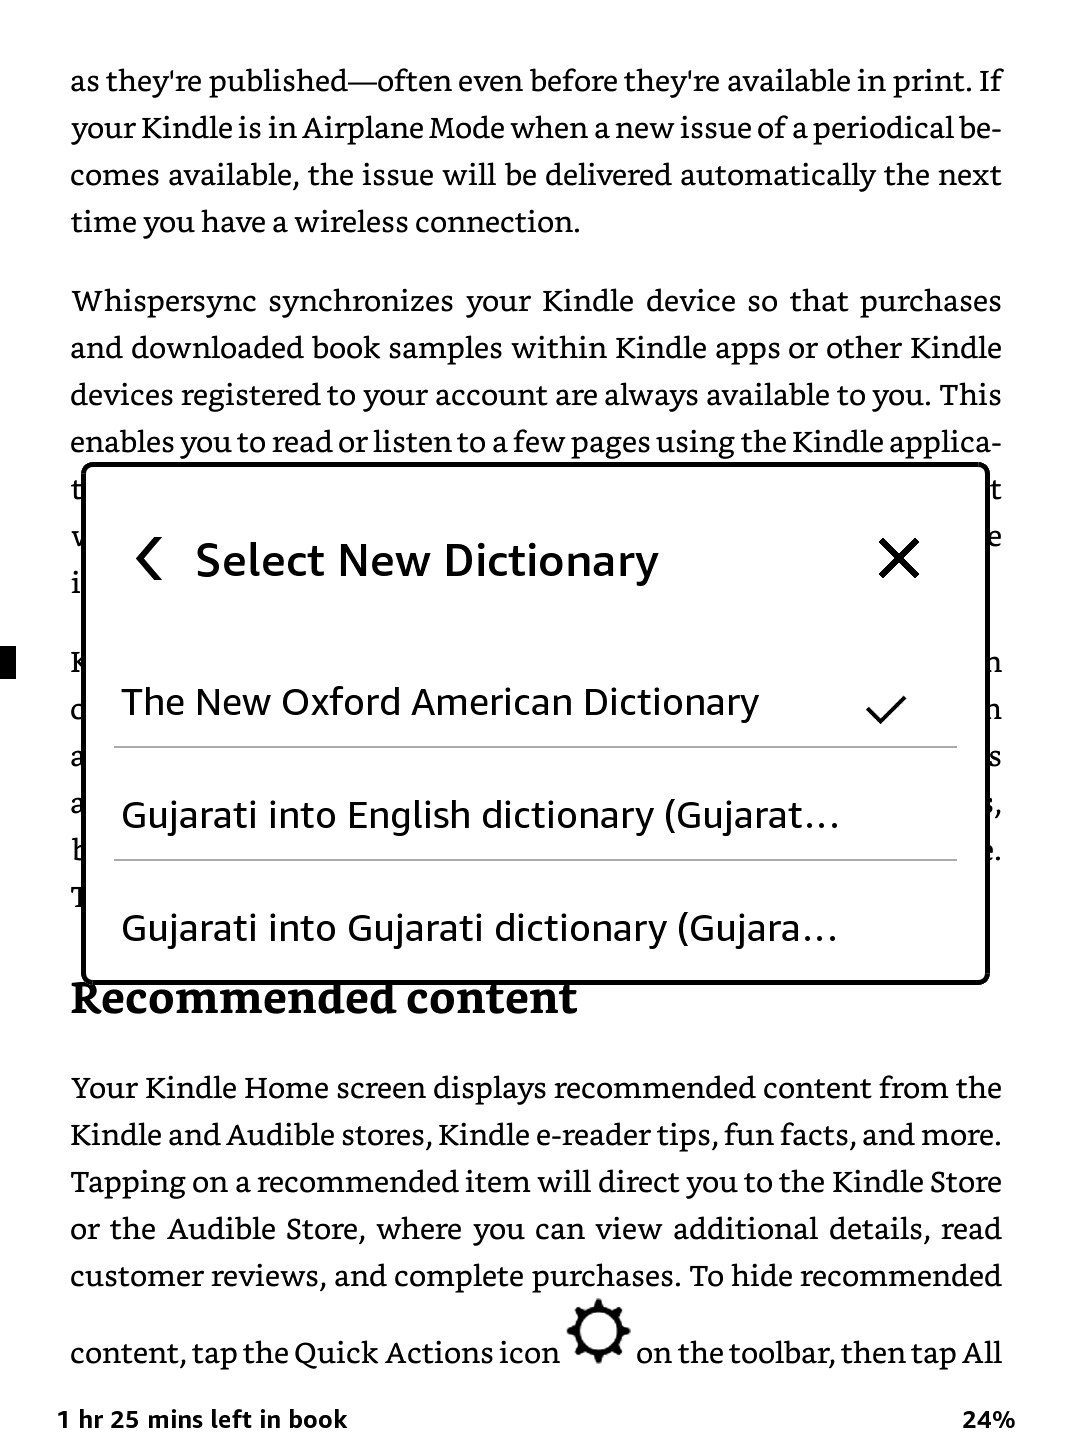 wybór domyślnego słownika na kindle - zrzut ekranu